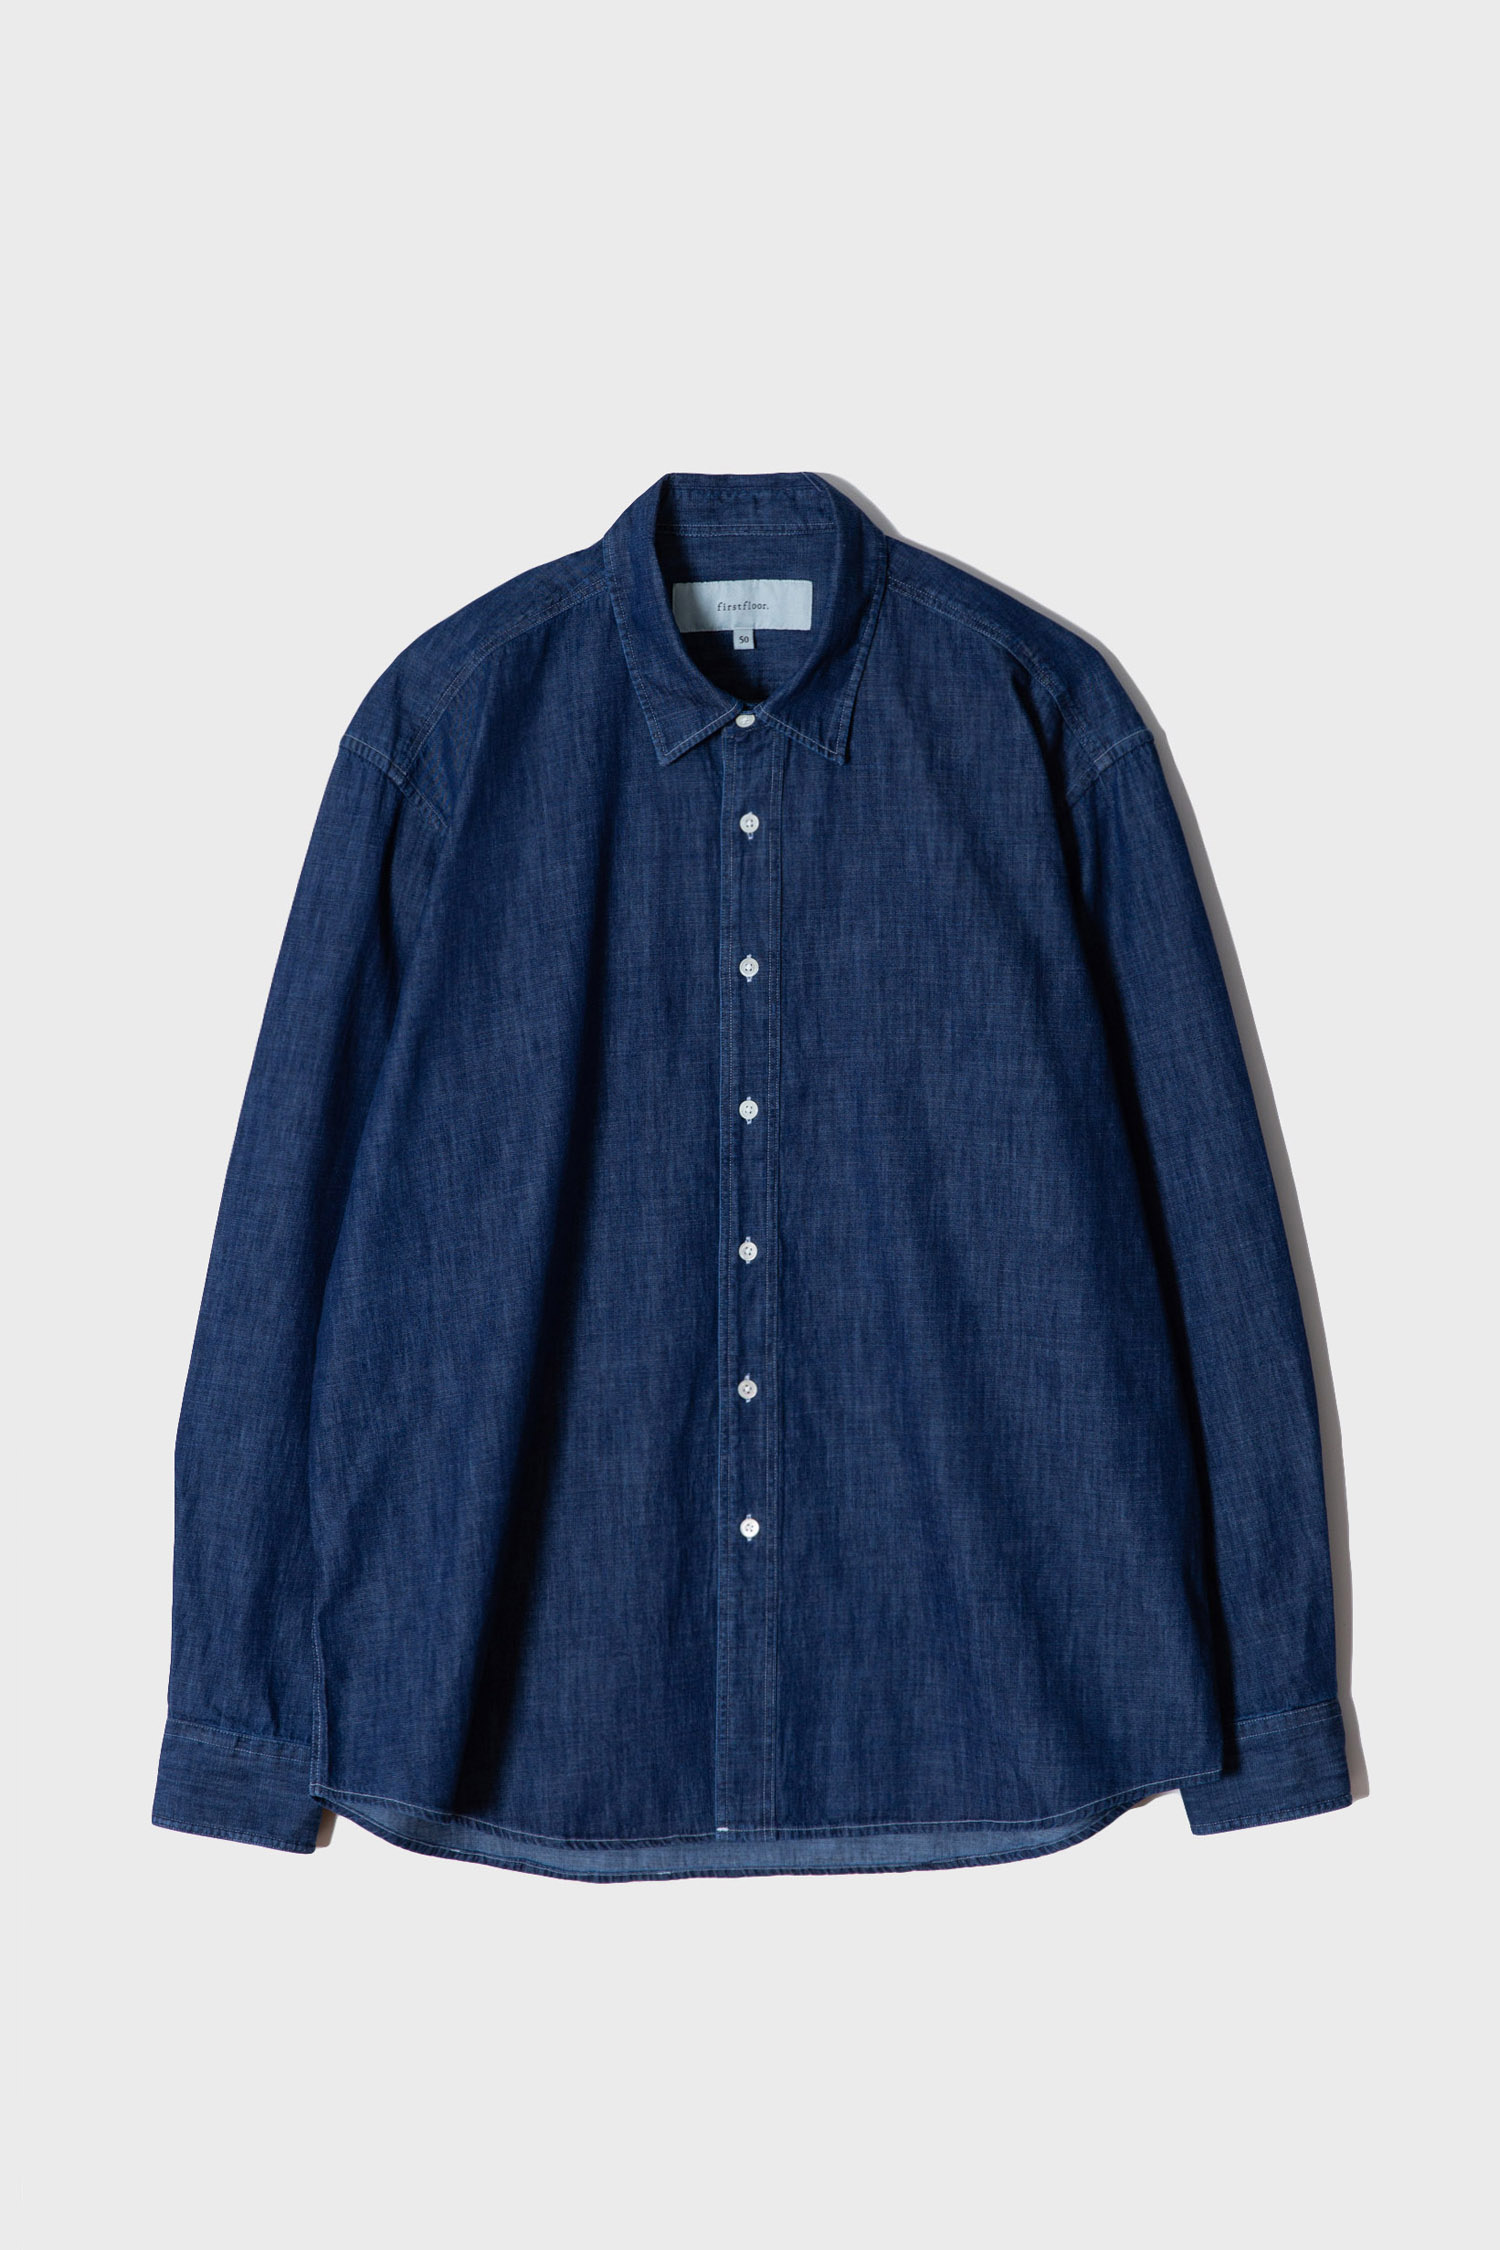 Washed denim shirt (blue indigo)